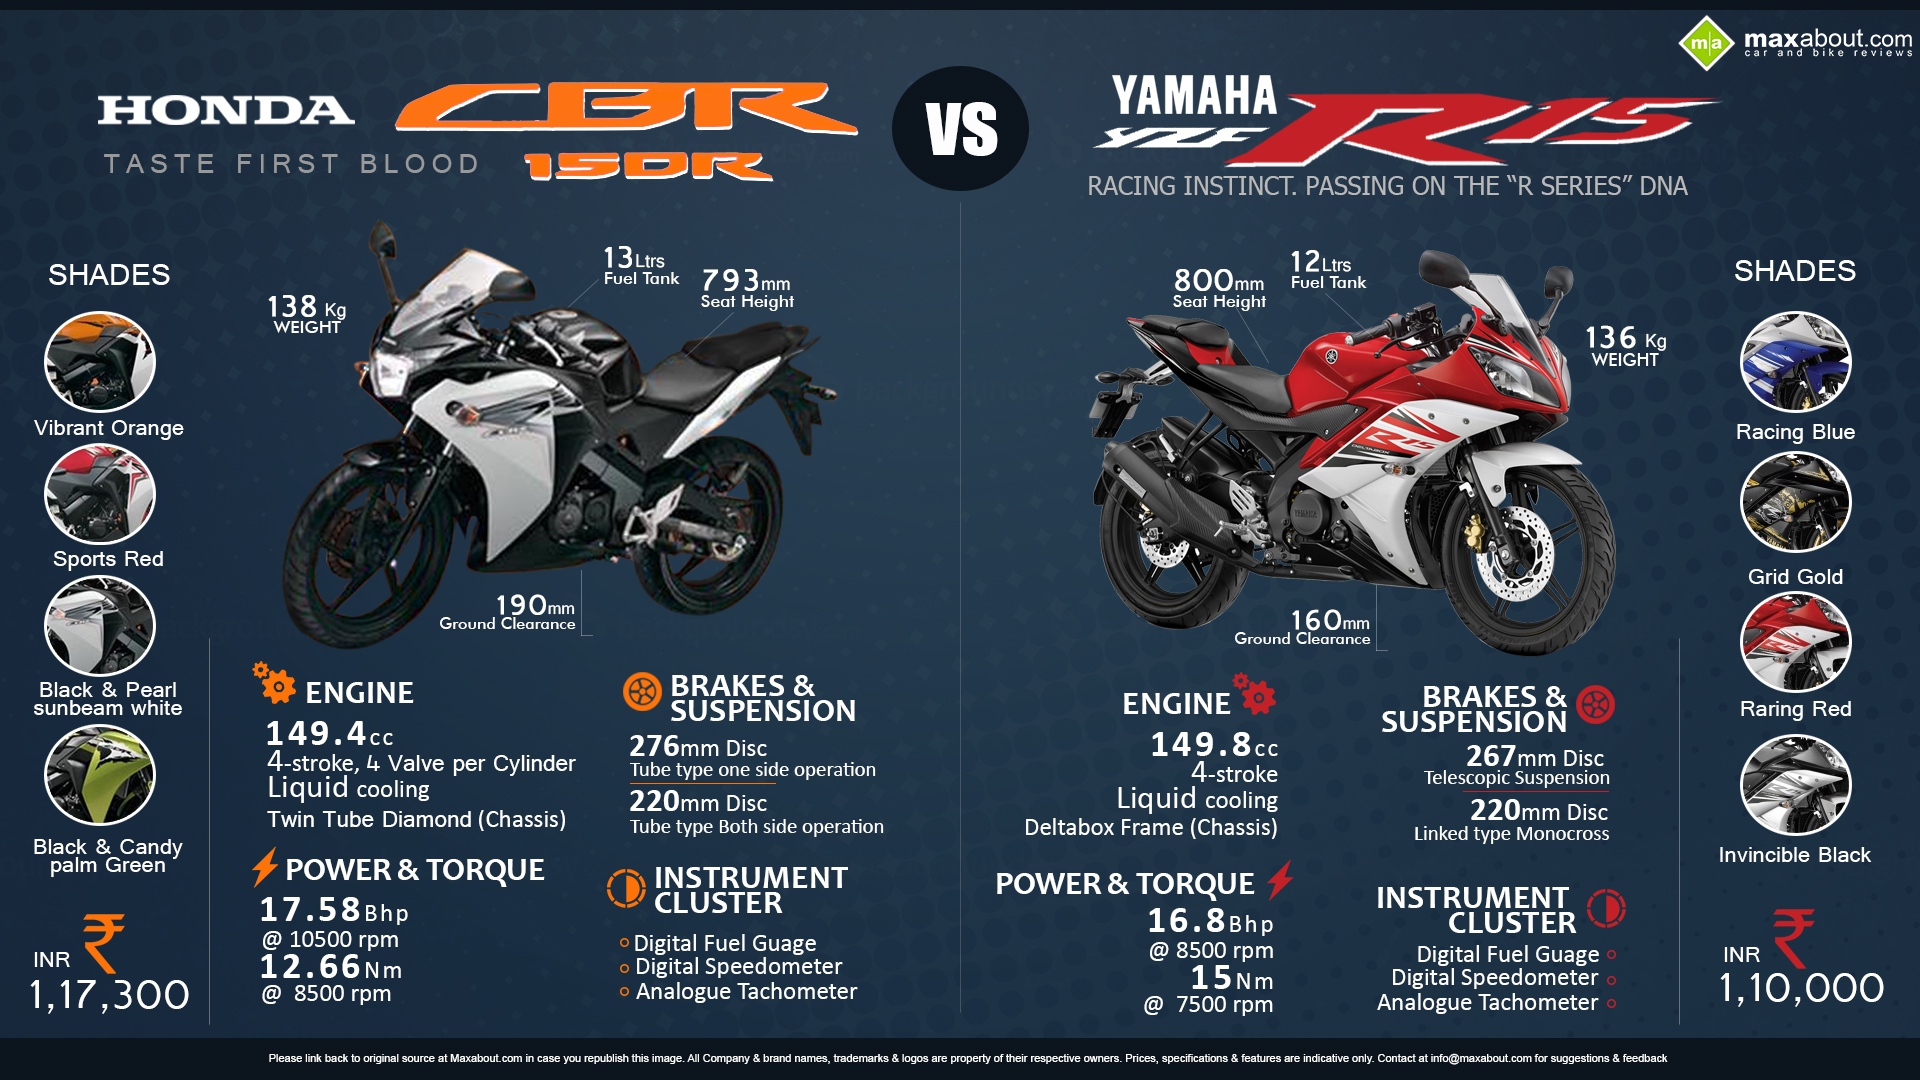 Yamaha YZF R15 vs Honda CBR150R